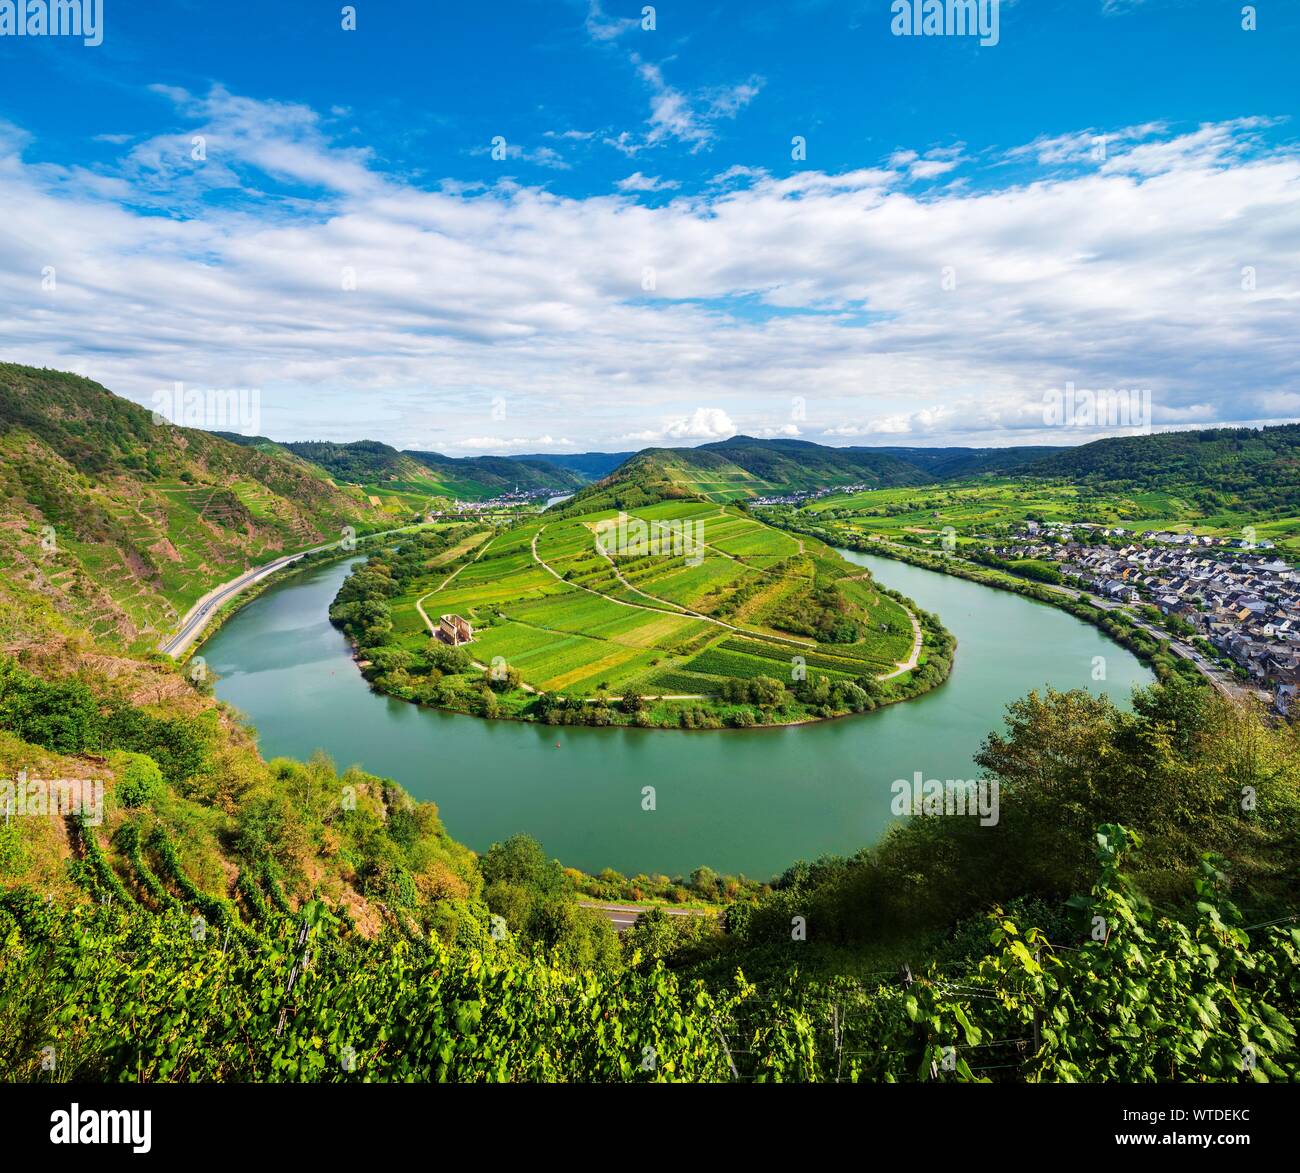 Boucle de la rivière Mosel, Bremm, vallée de la Moselle, Rhénanie-Palatinat, Allemagne Banque D'Images